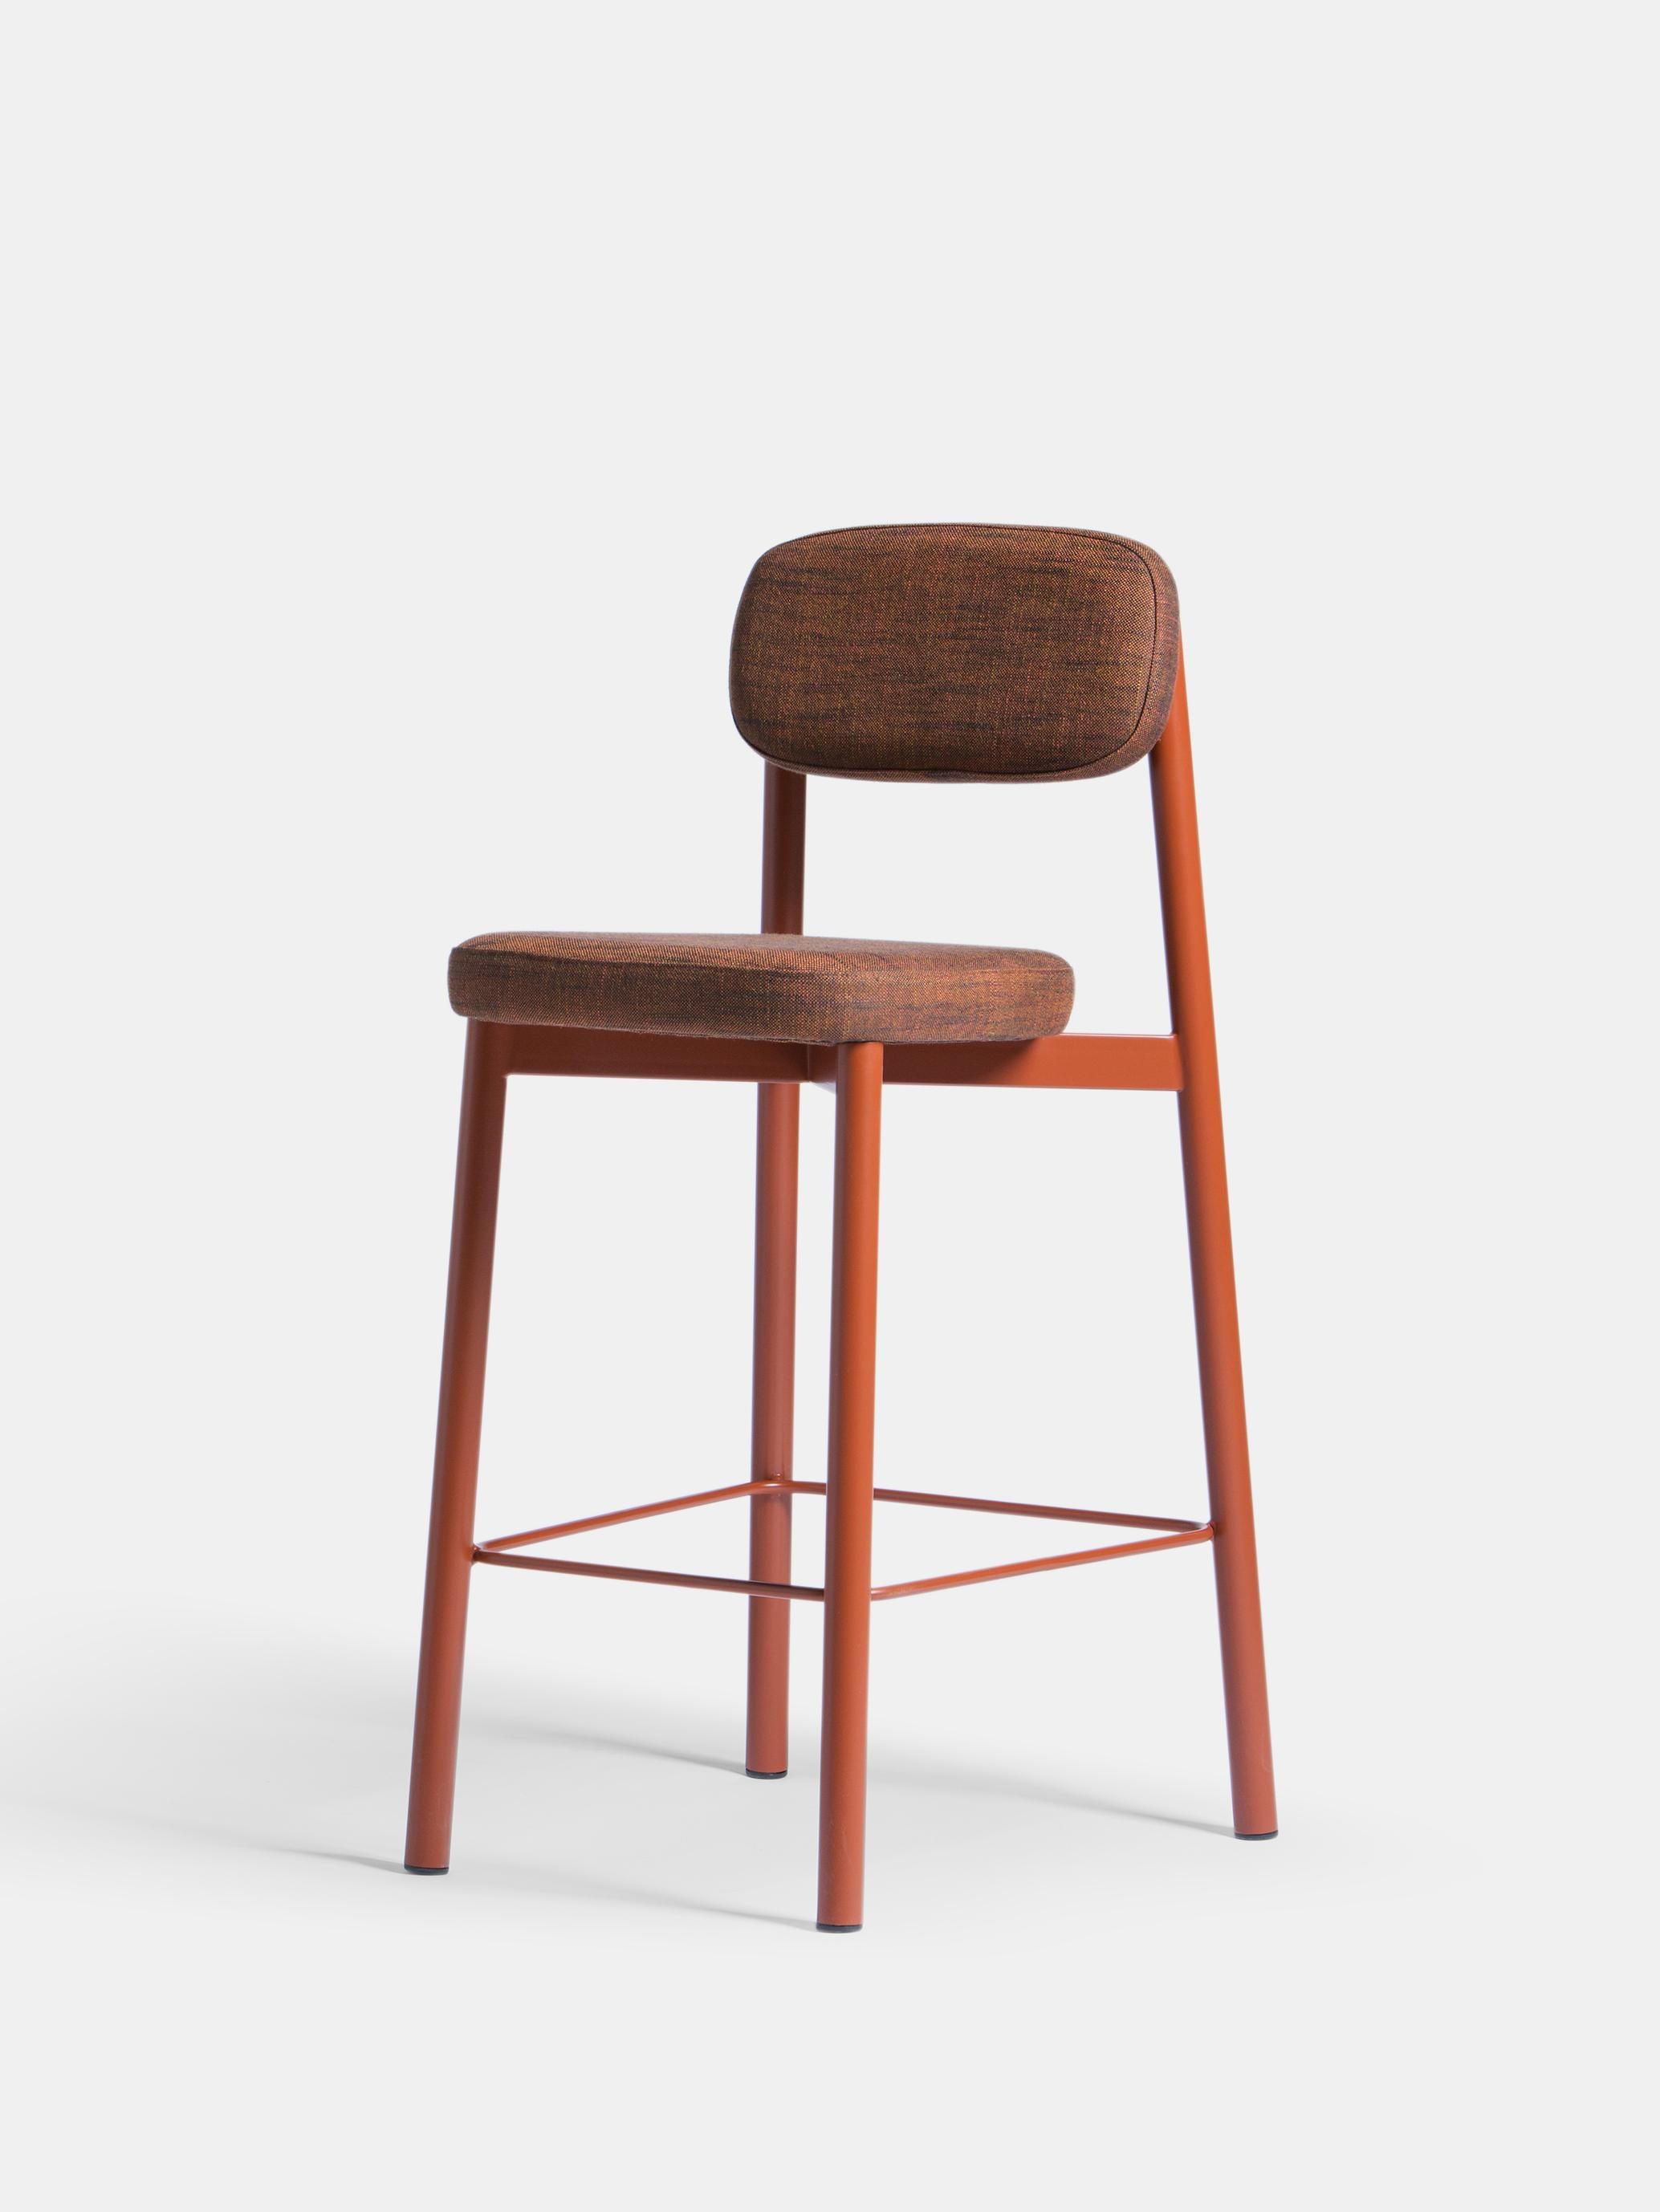 Ensemble de 6 chaises de comptoir 65 cm rouge brique de Kann Design
Dimensions : D 50 x L 46 x H 93 cm.
MATERIAL : Tube d'acier, mousse HR, tissu d'ameublement Sahco Ellis 18 (70 % viscose, 30 % lin).
Disponible dans d'autres couleurs.

Tous les